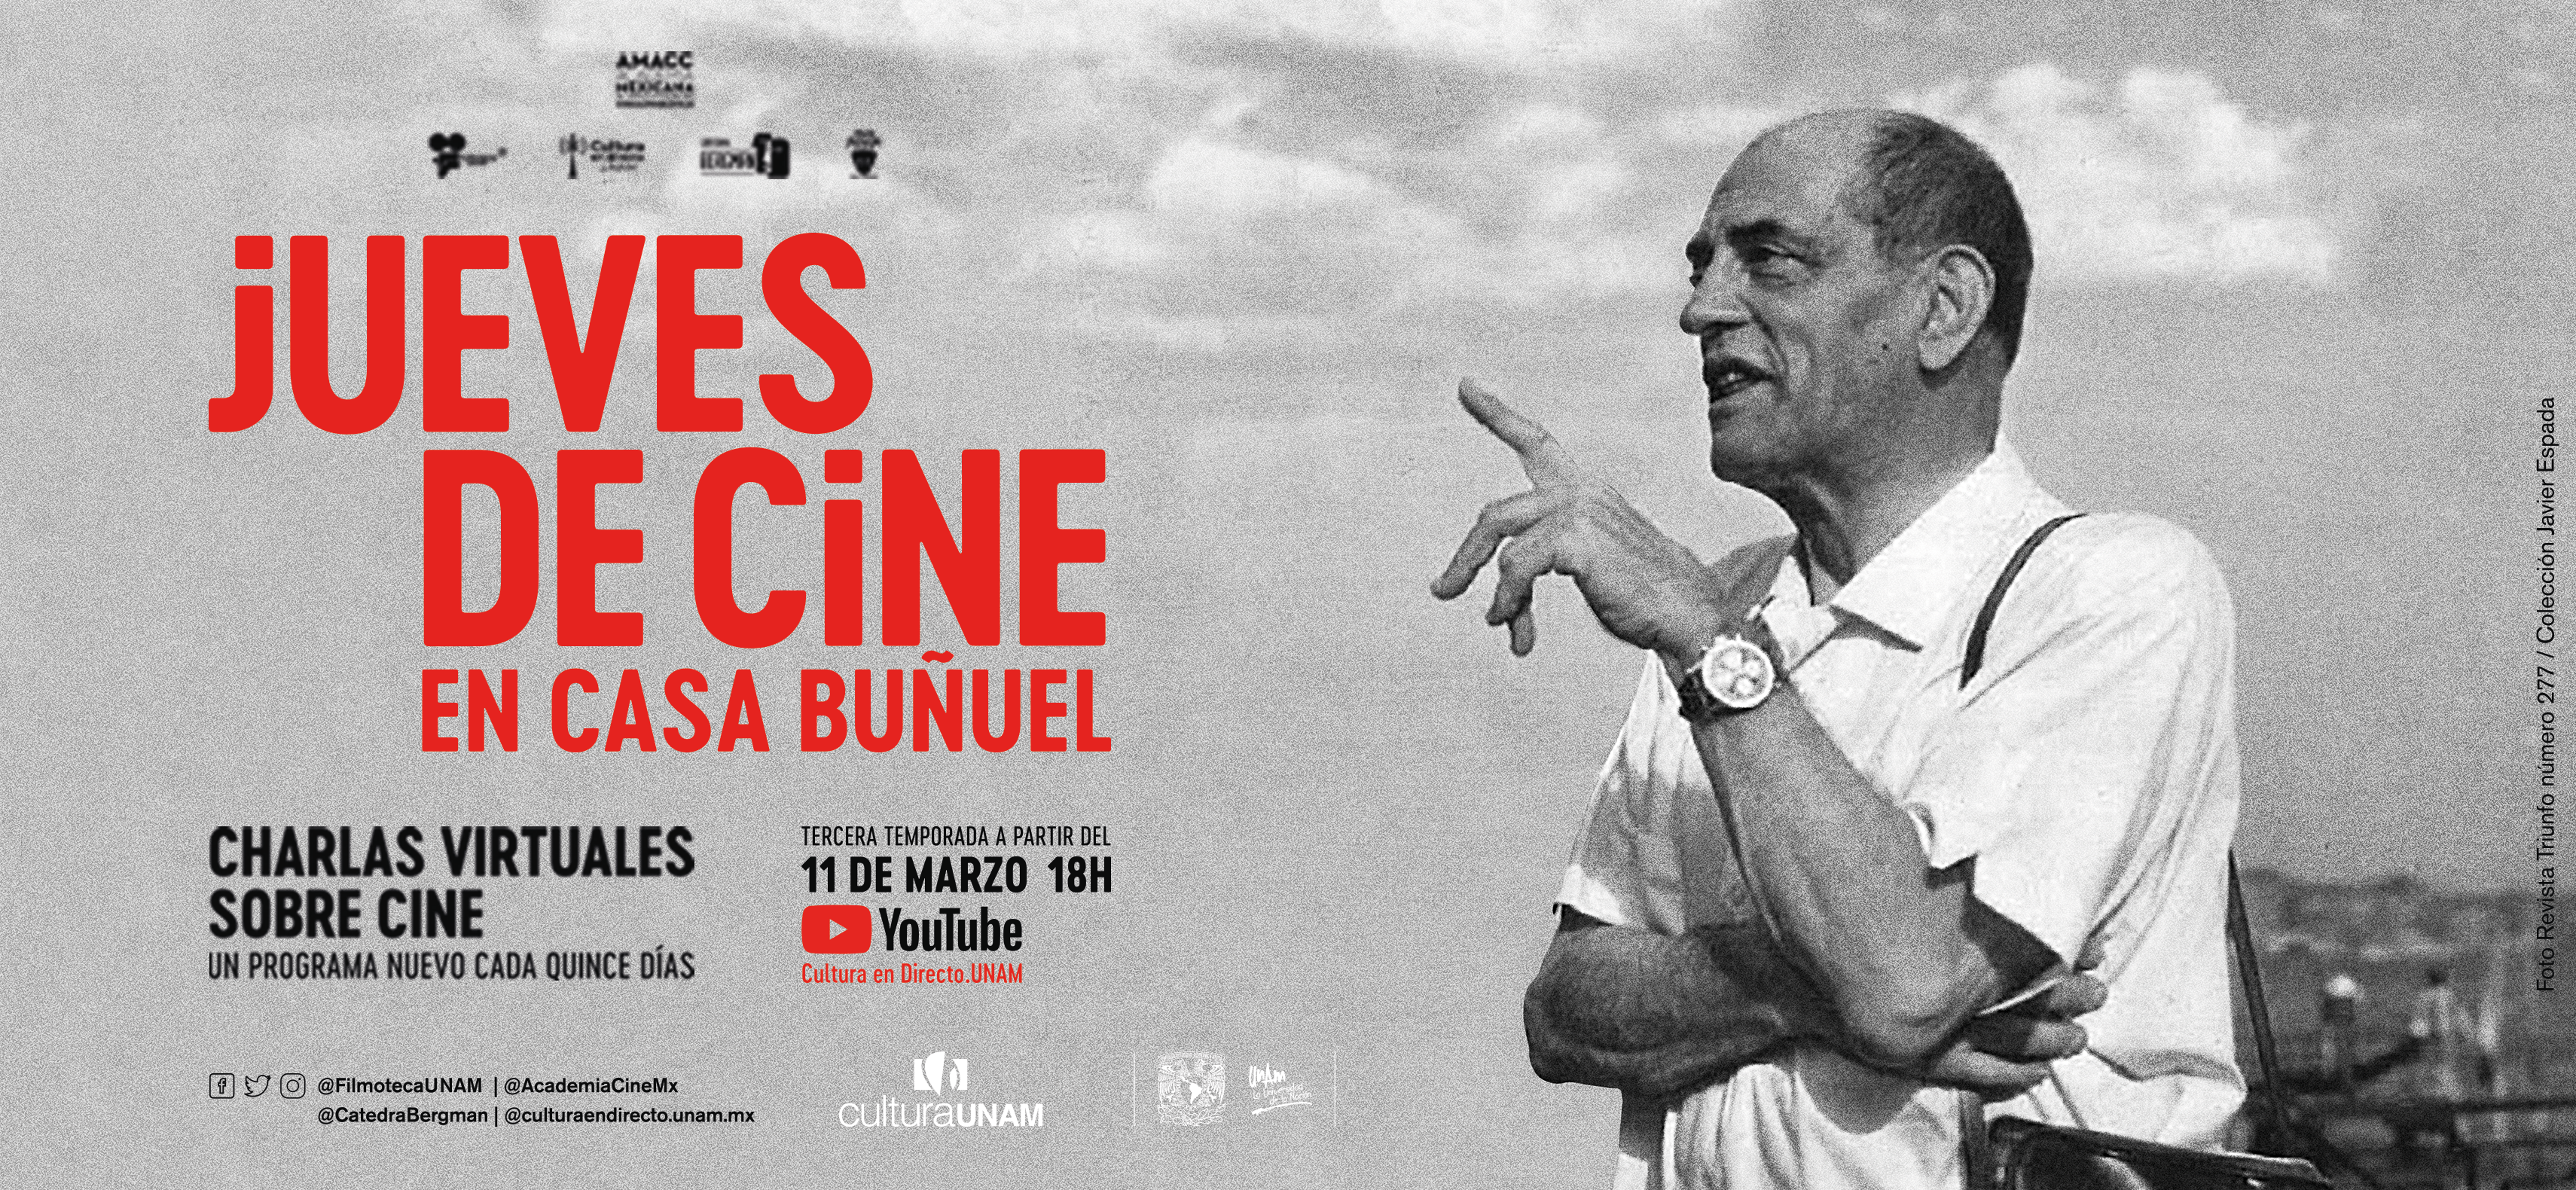 Jueves de cine en Casa Buñuel | Tercera temporada